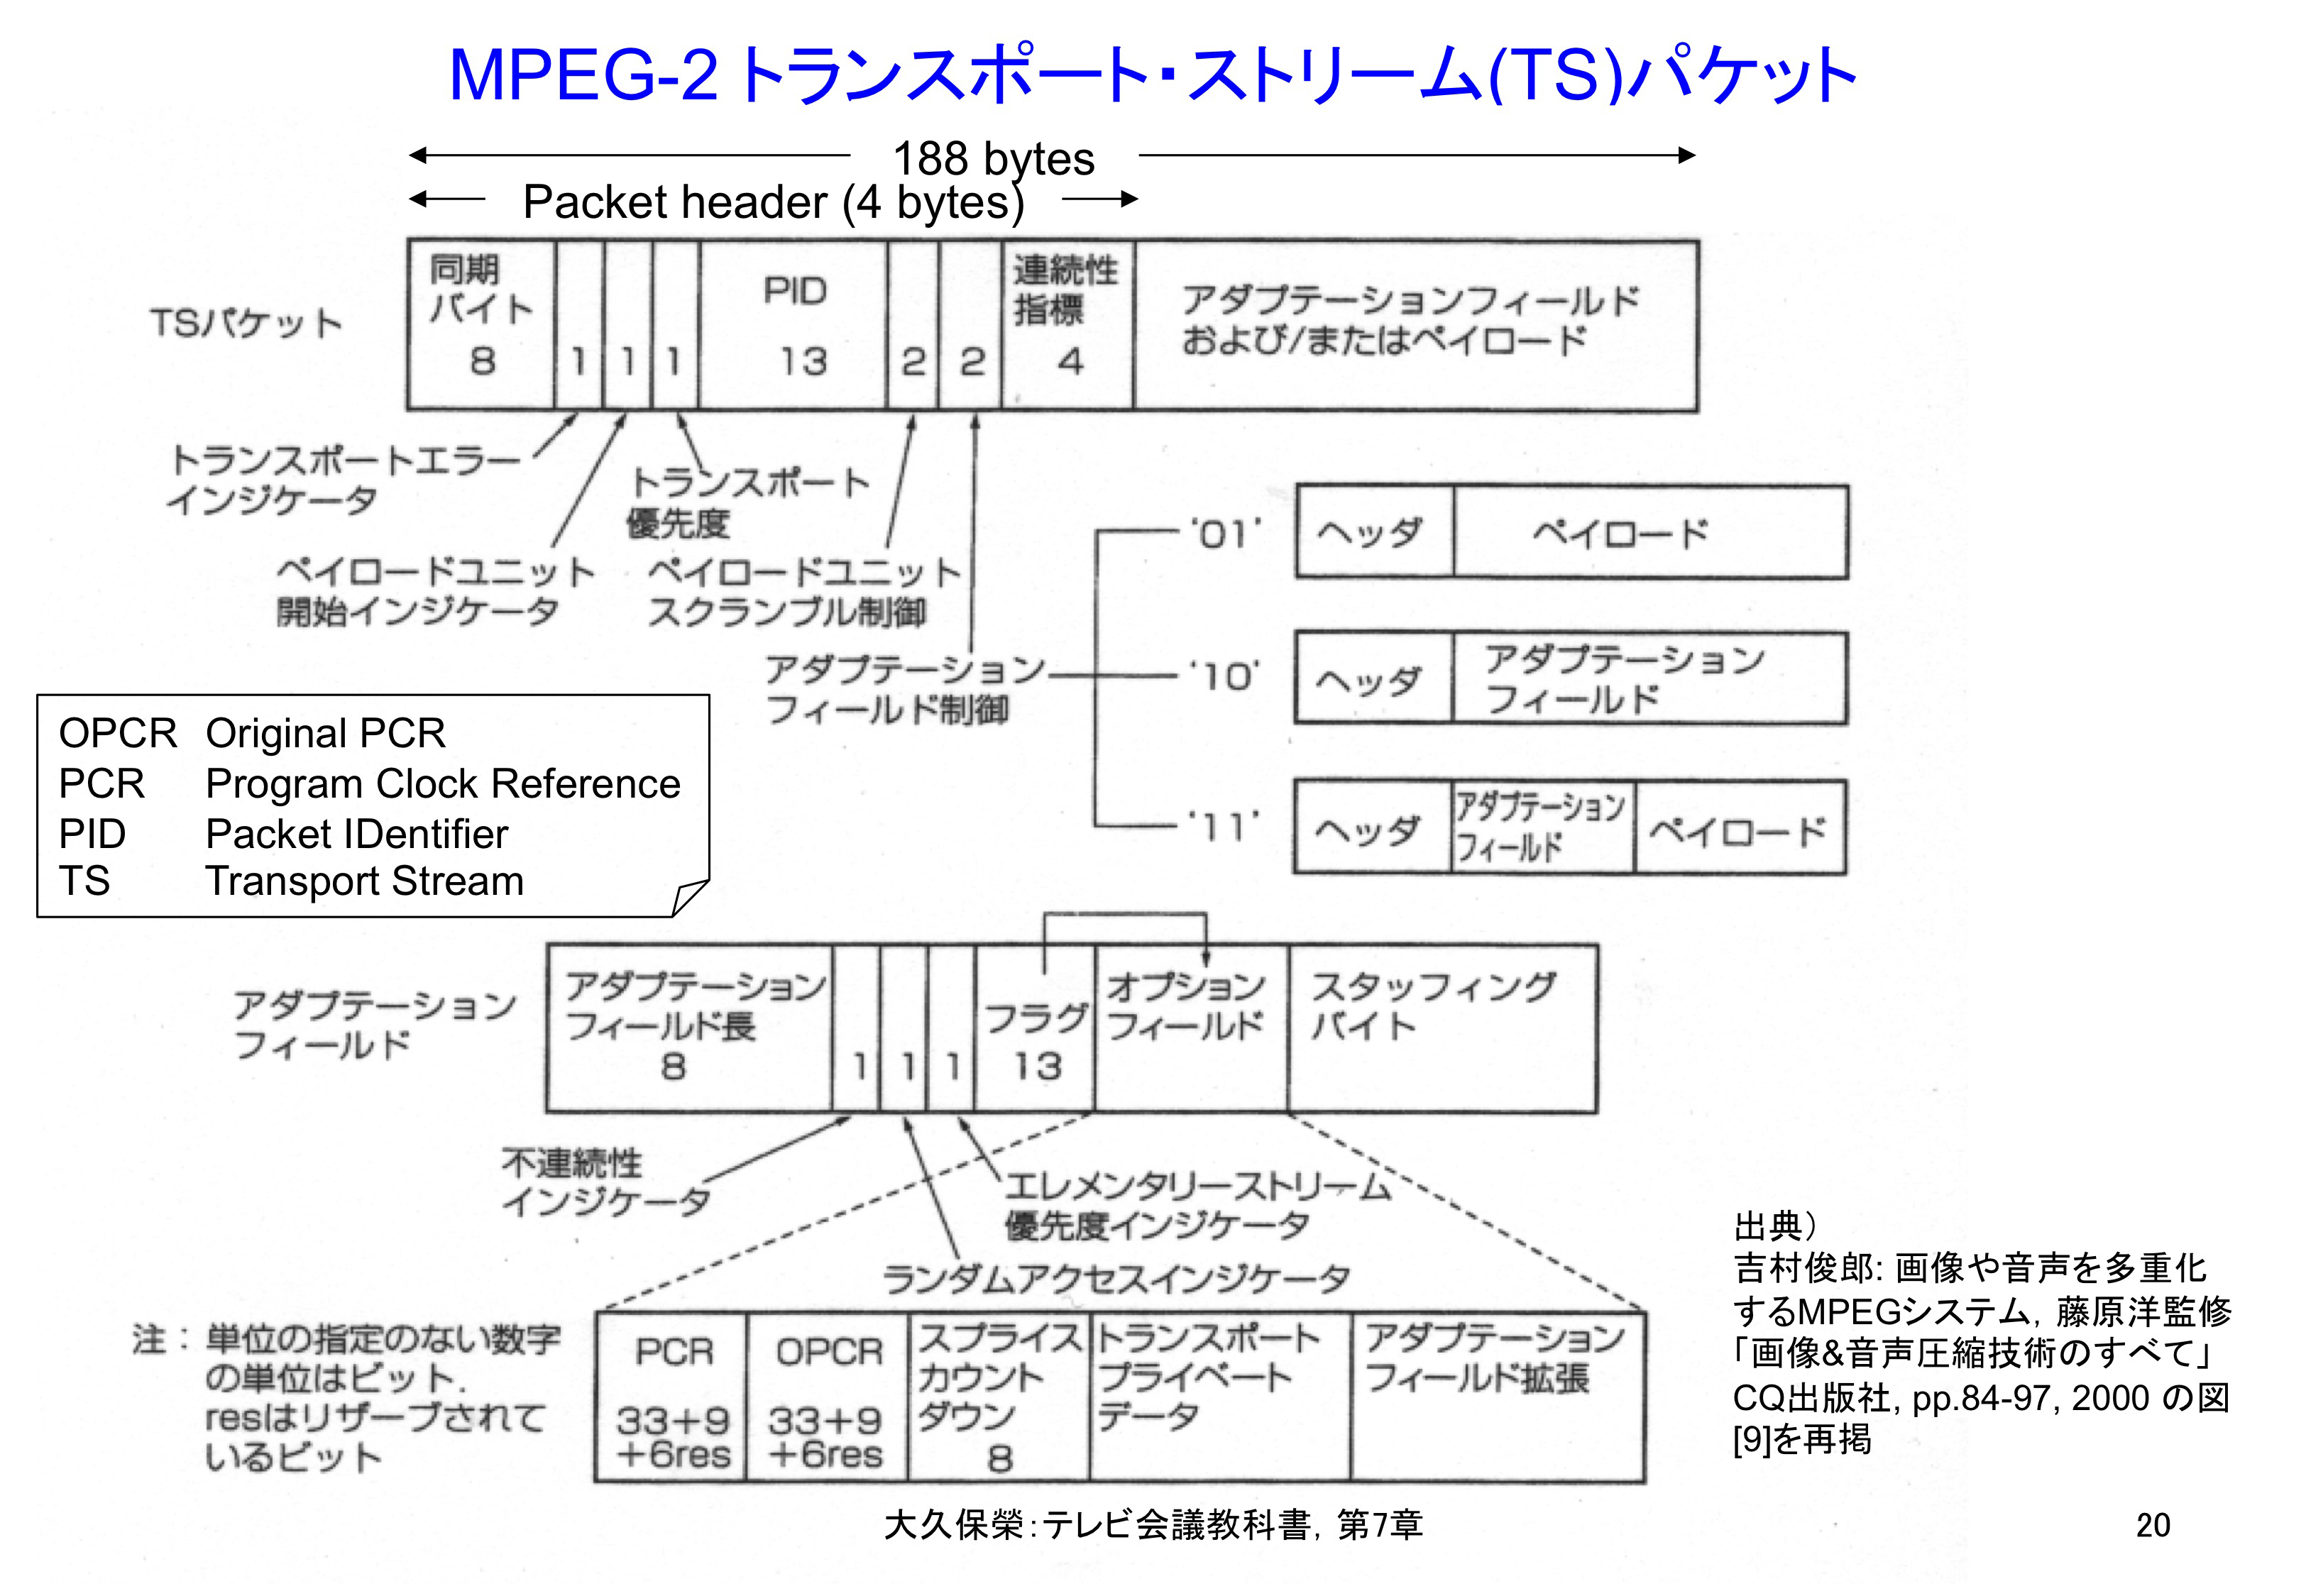 図7-20 MPEG-2 トランスポート・ストリーム(TS)パケット